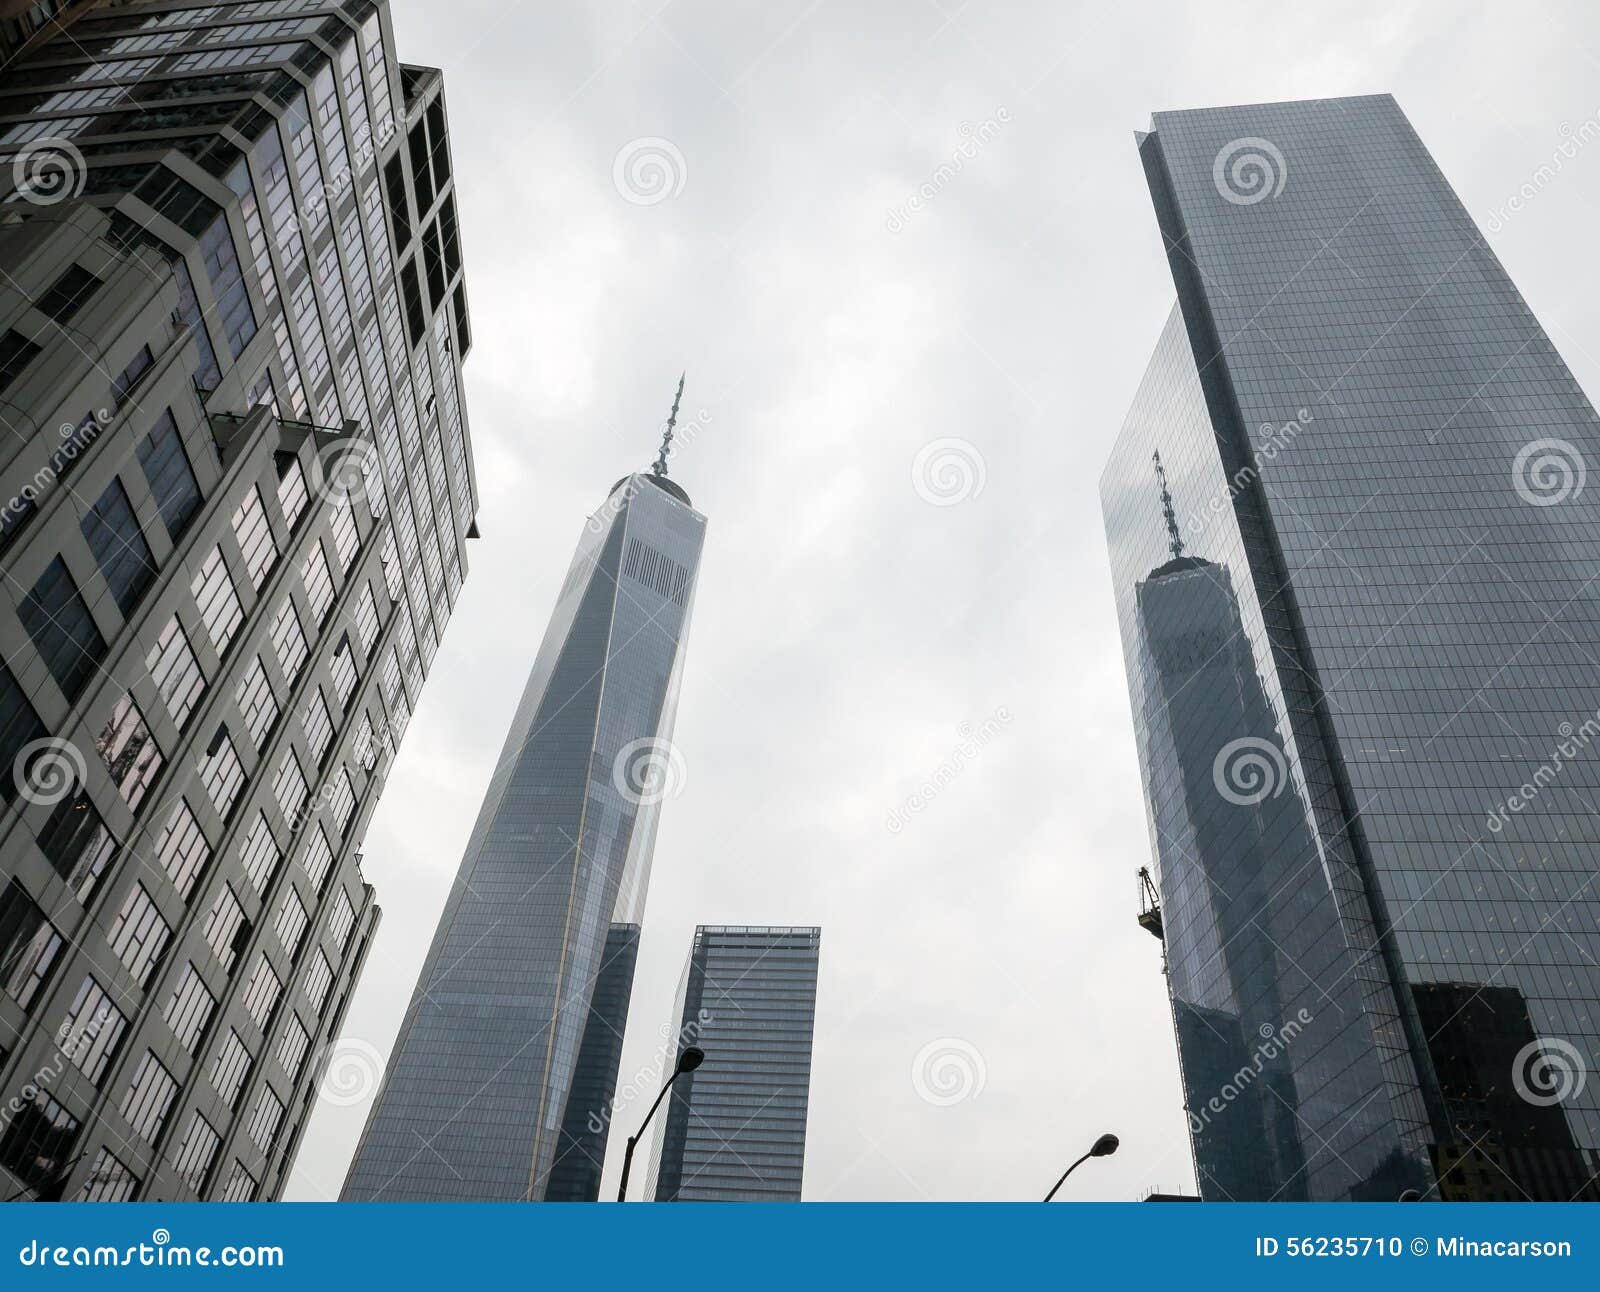 Ein World Trade Center reflektiert im nahe gelegenen Glas-überzogenen Highrise. New York, NY, am 16. Juni 2015: Ein World Trade Center und seine Reflexion im nahe gelegenen Glas-überzogenen Highrise im Lower Manhattan